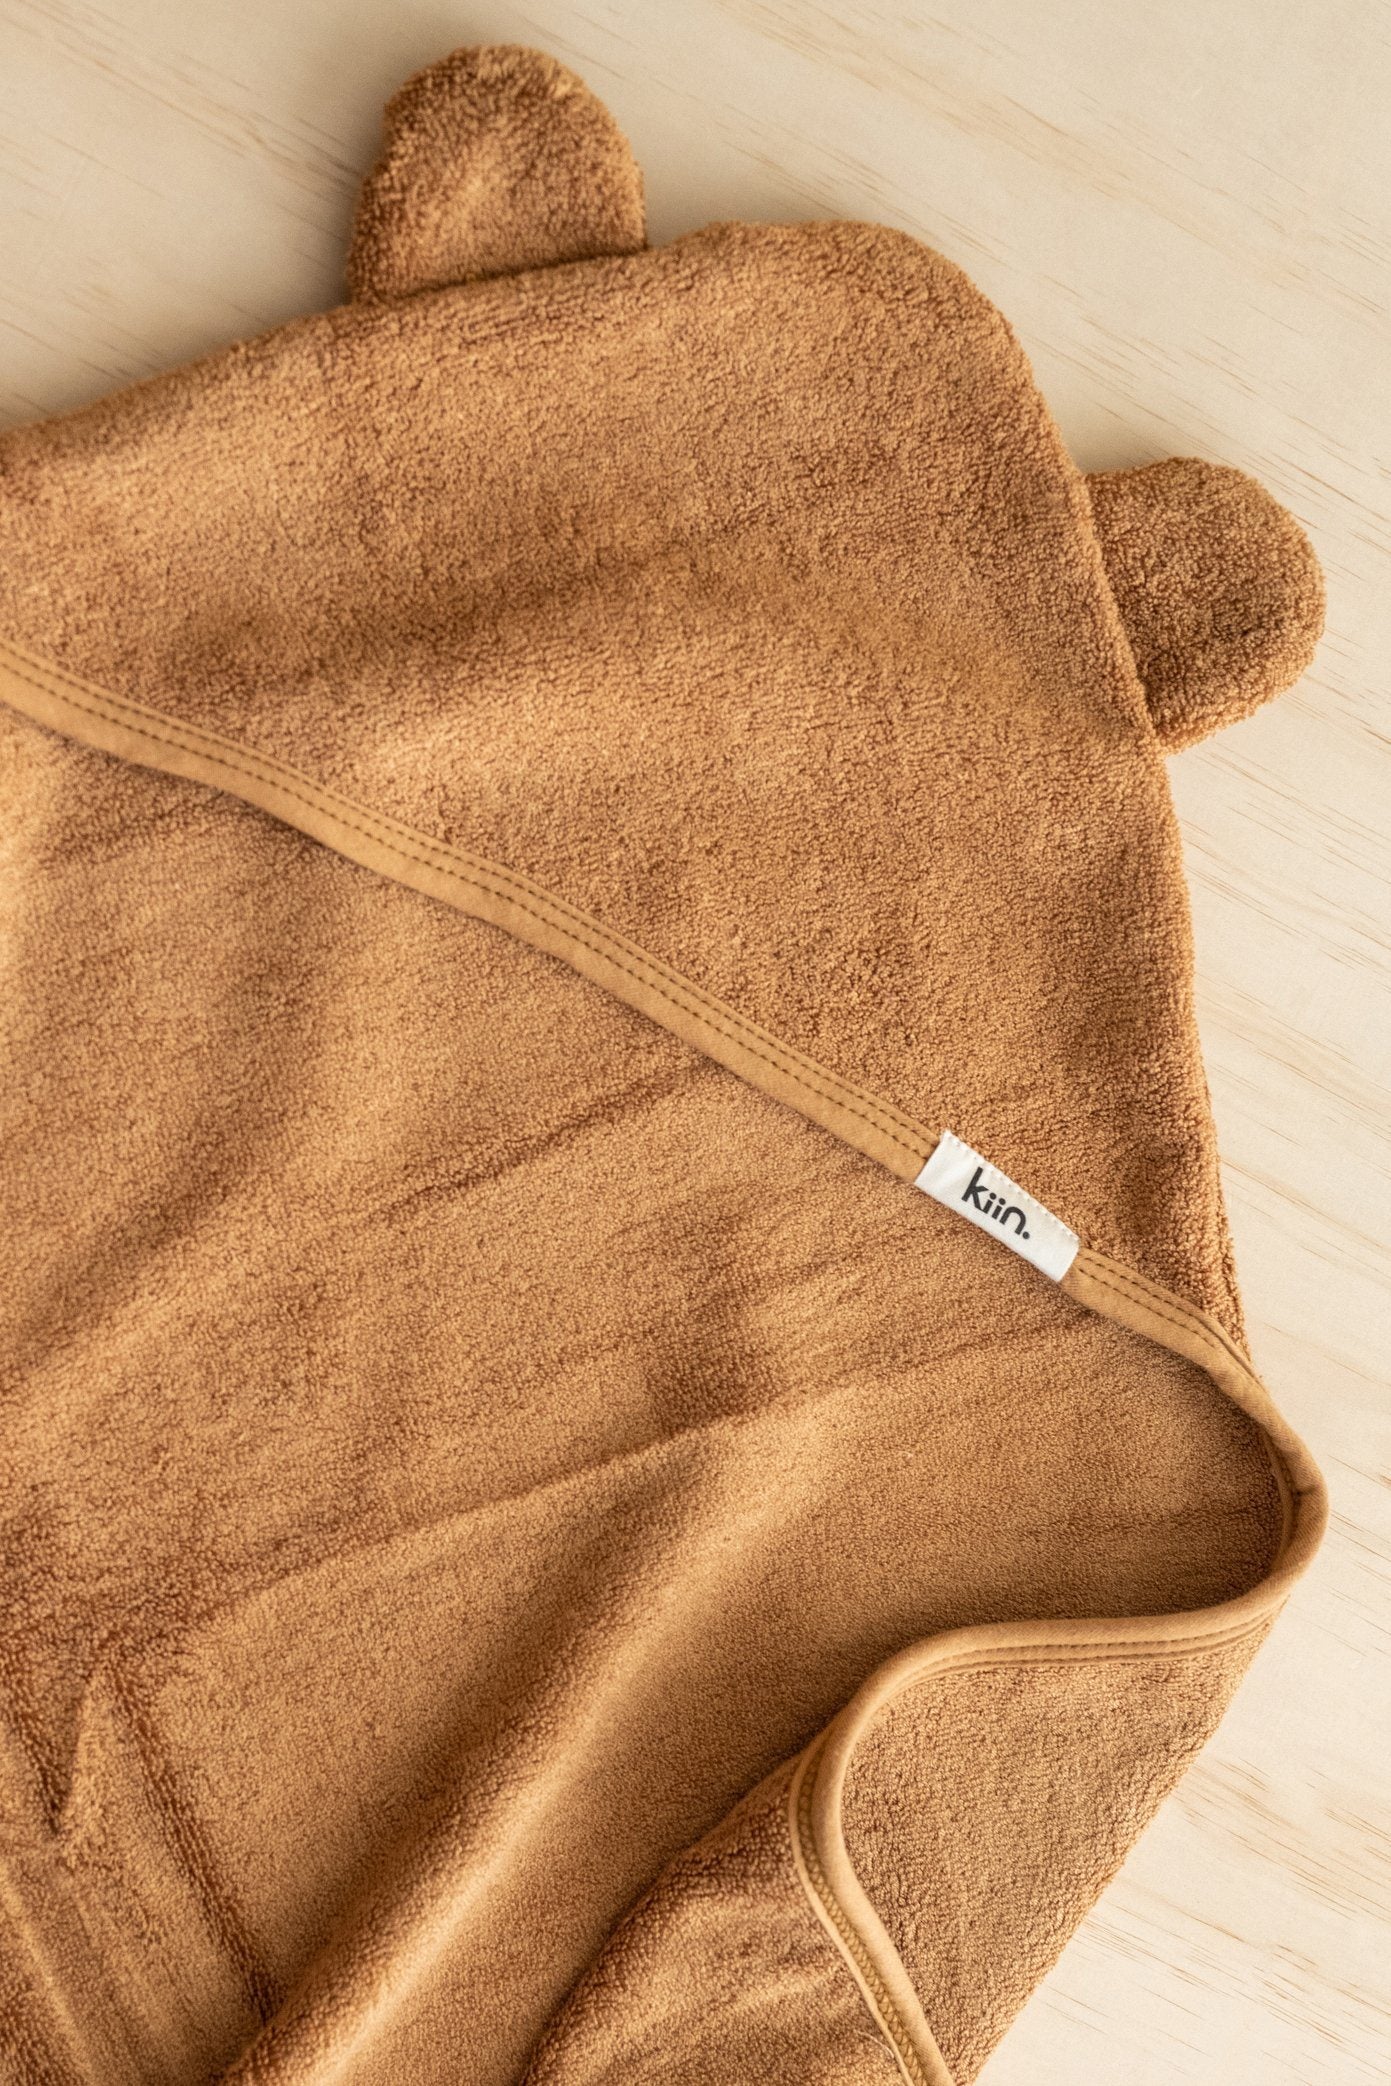 Kiin - Baby Hooded Towel (Caramel)